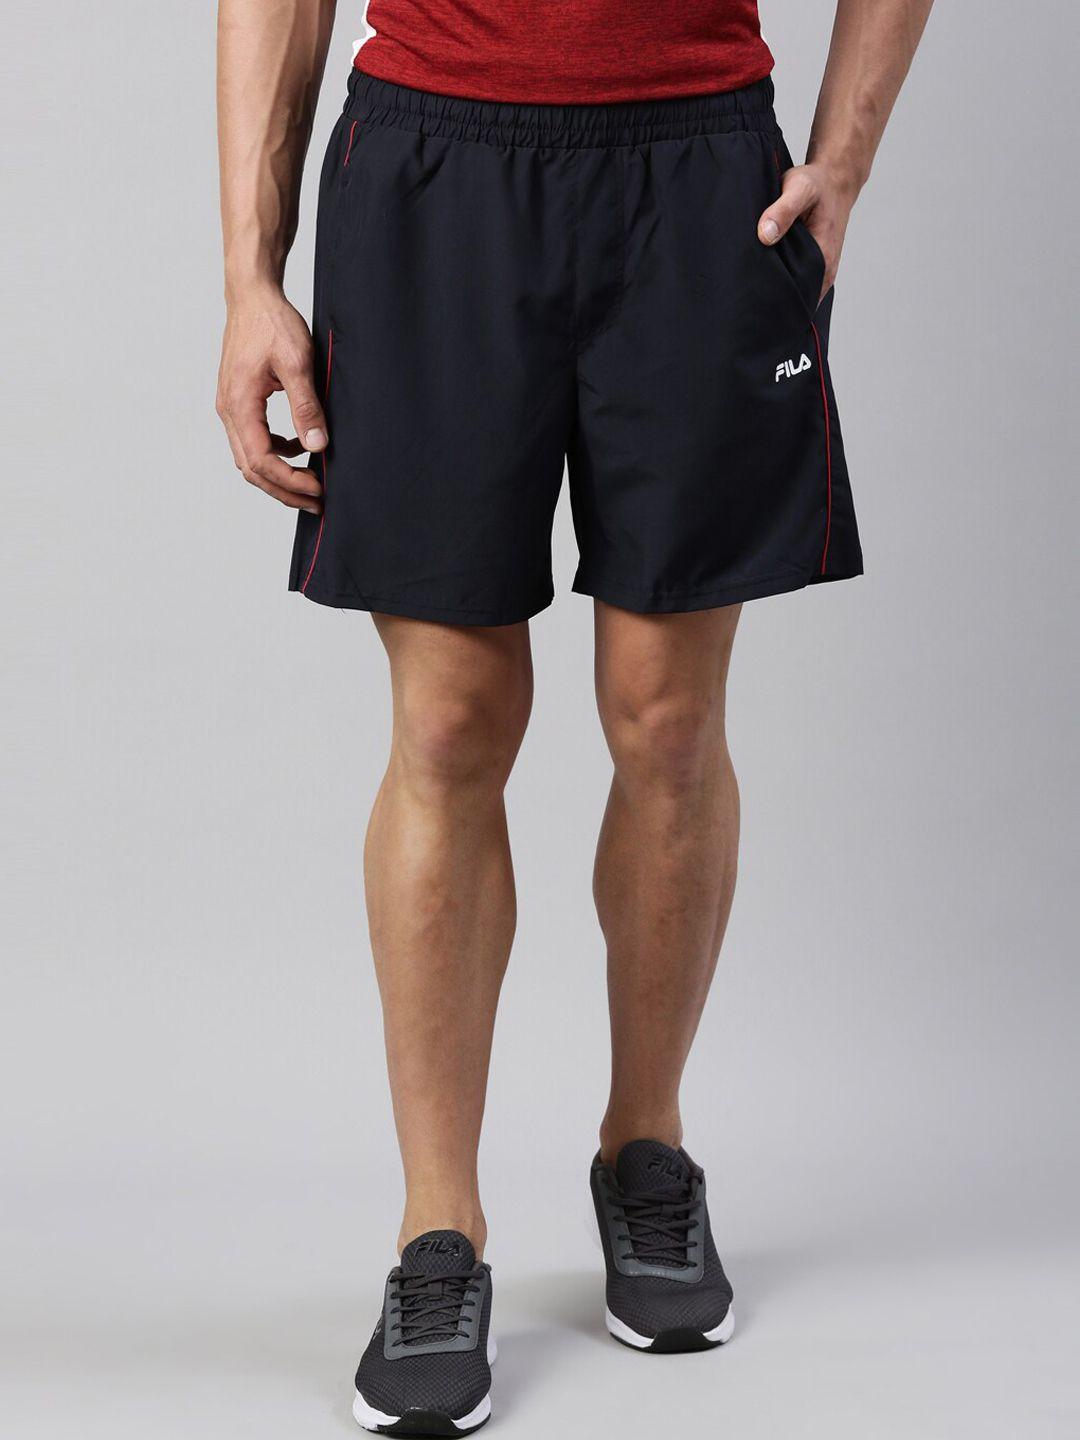 fila men black cotton training sports shorts